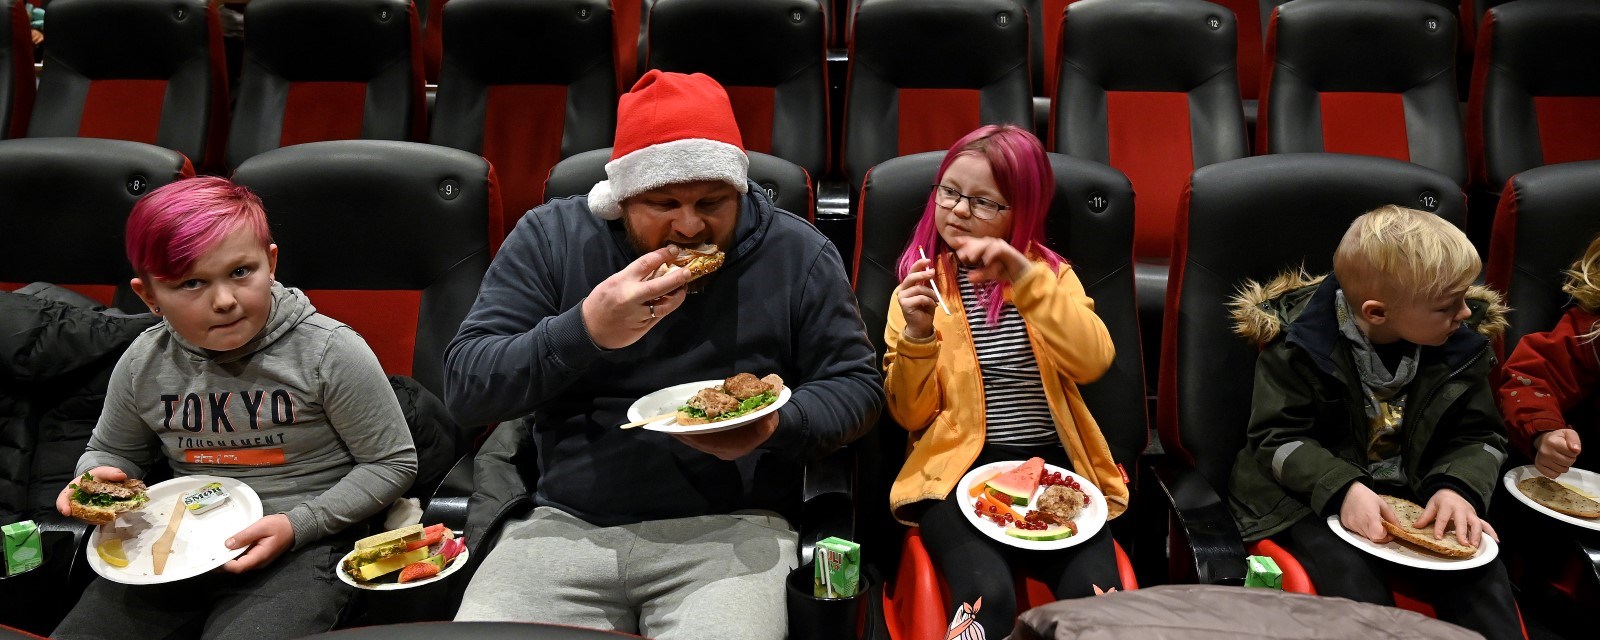 Tre barn og en voksen spiser i en kinosal